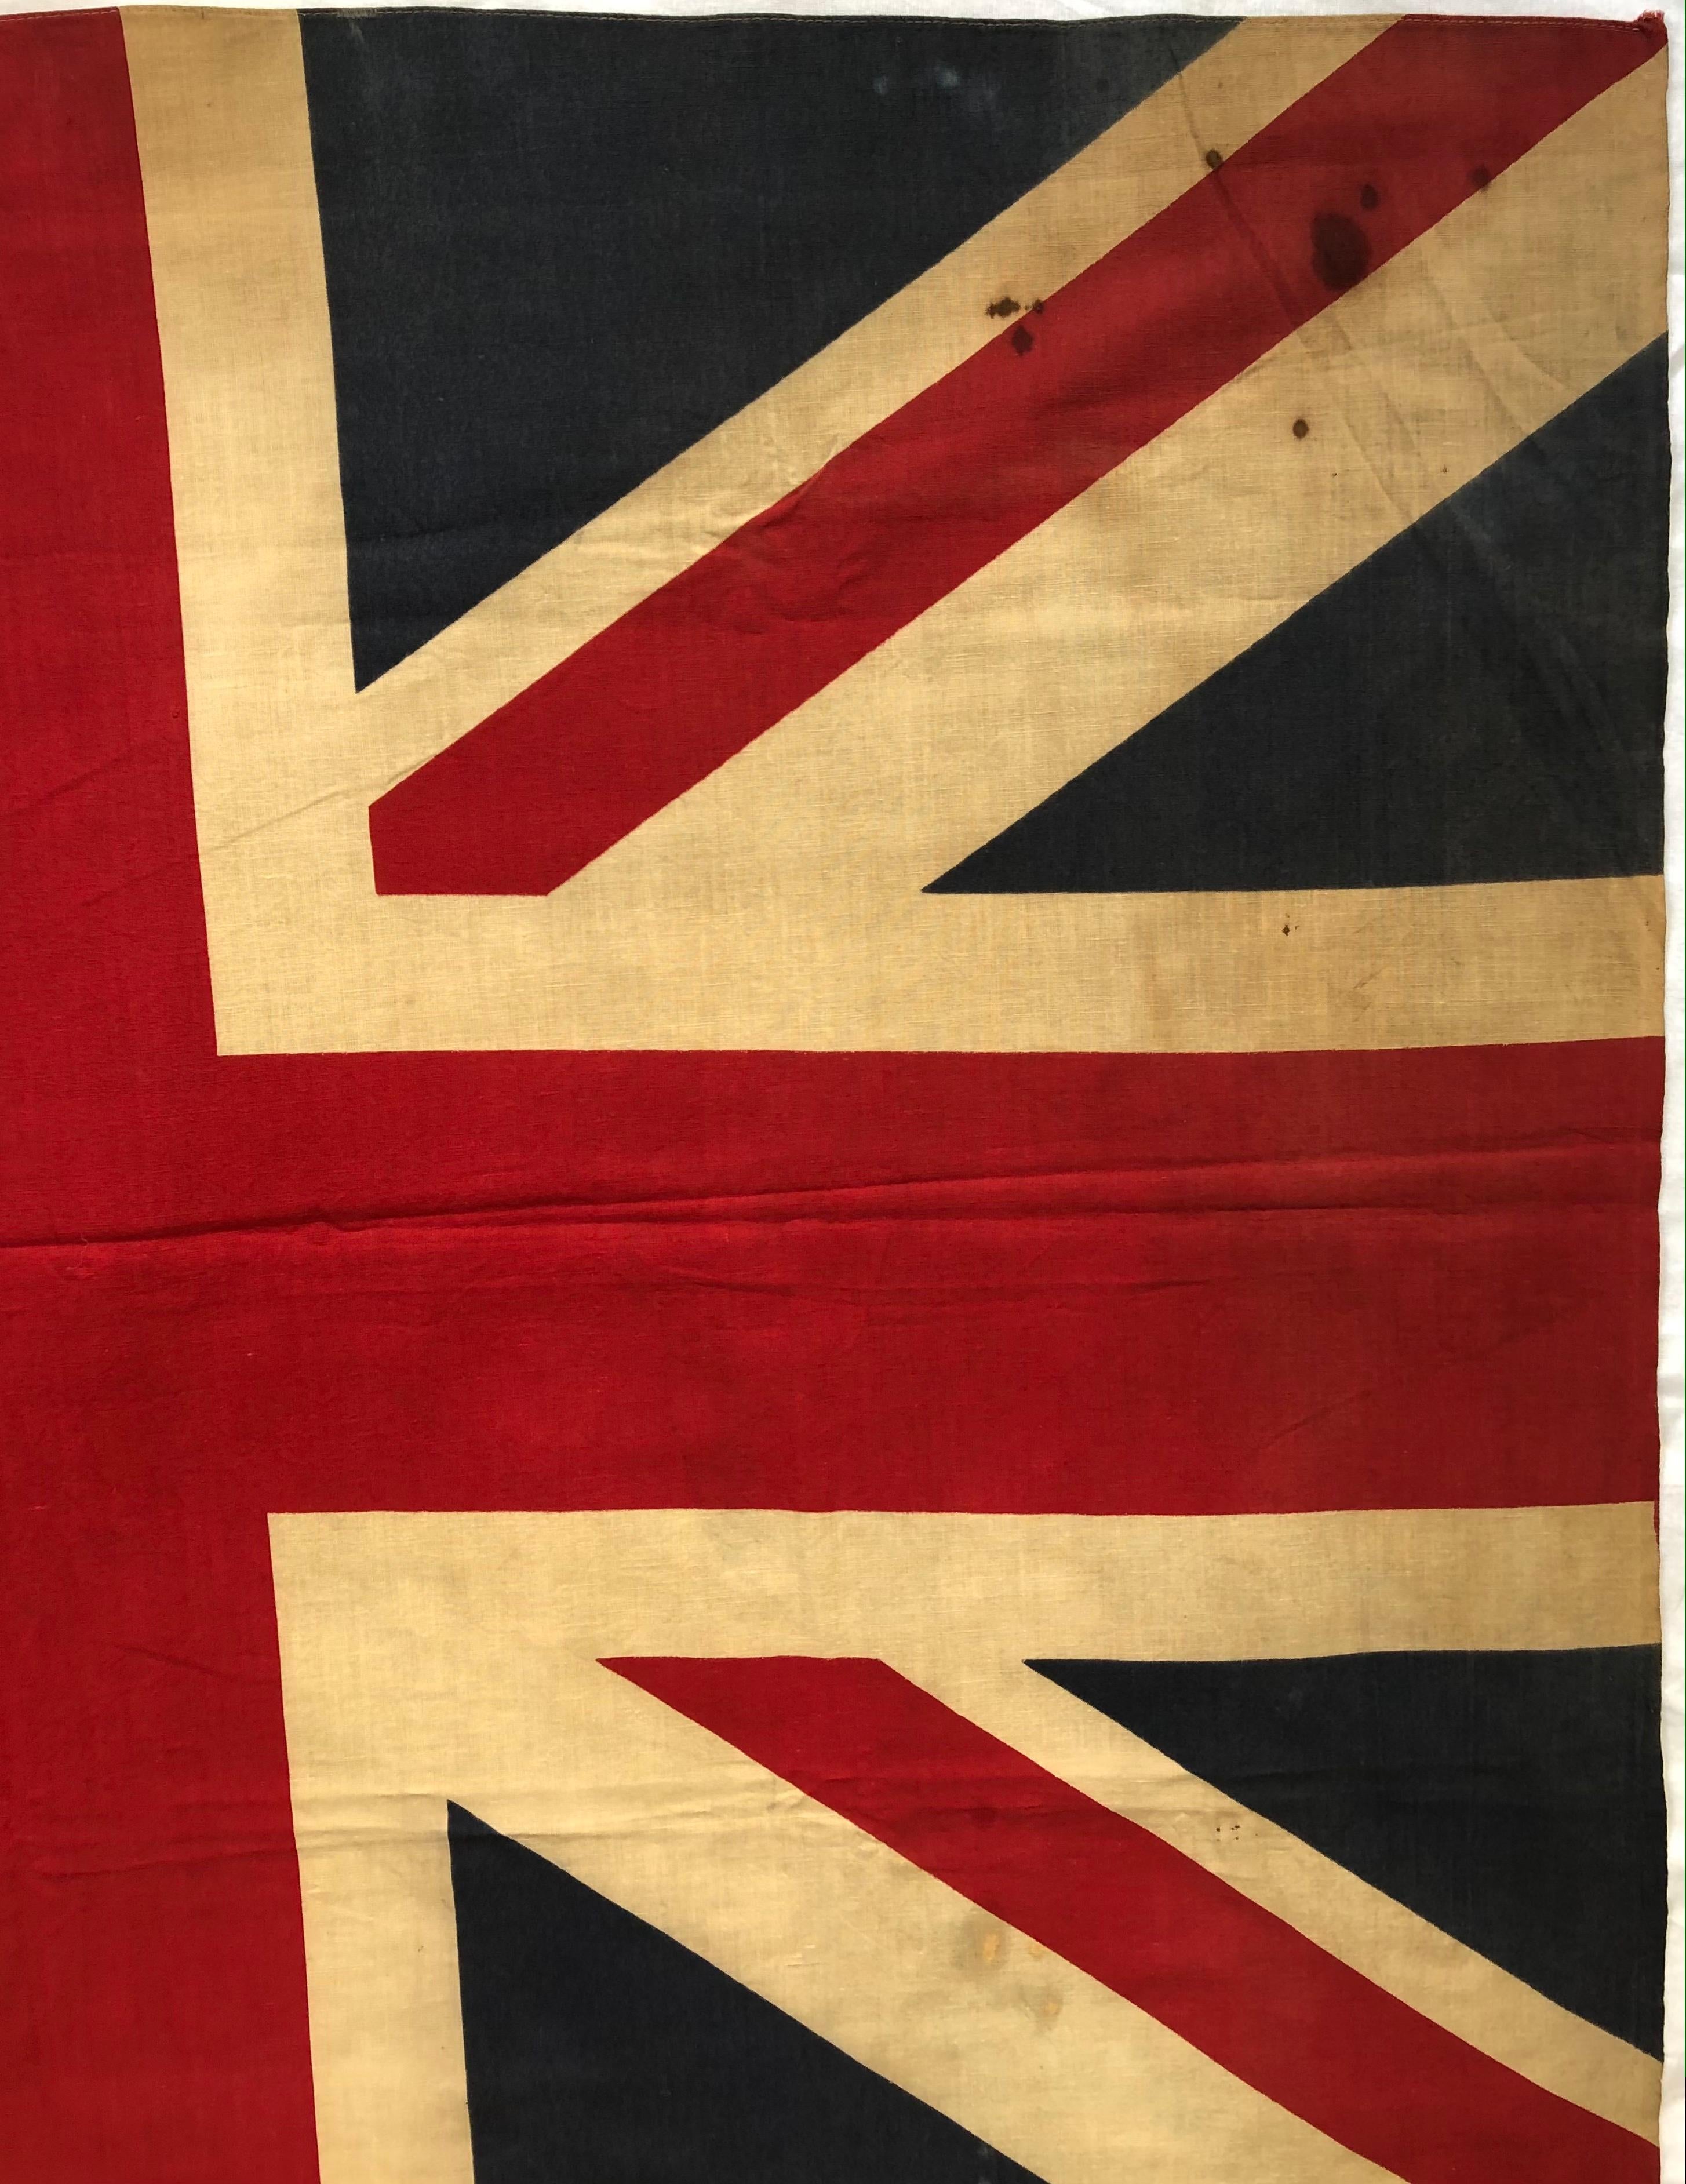 English British Union Jack Flag of the WWII